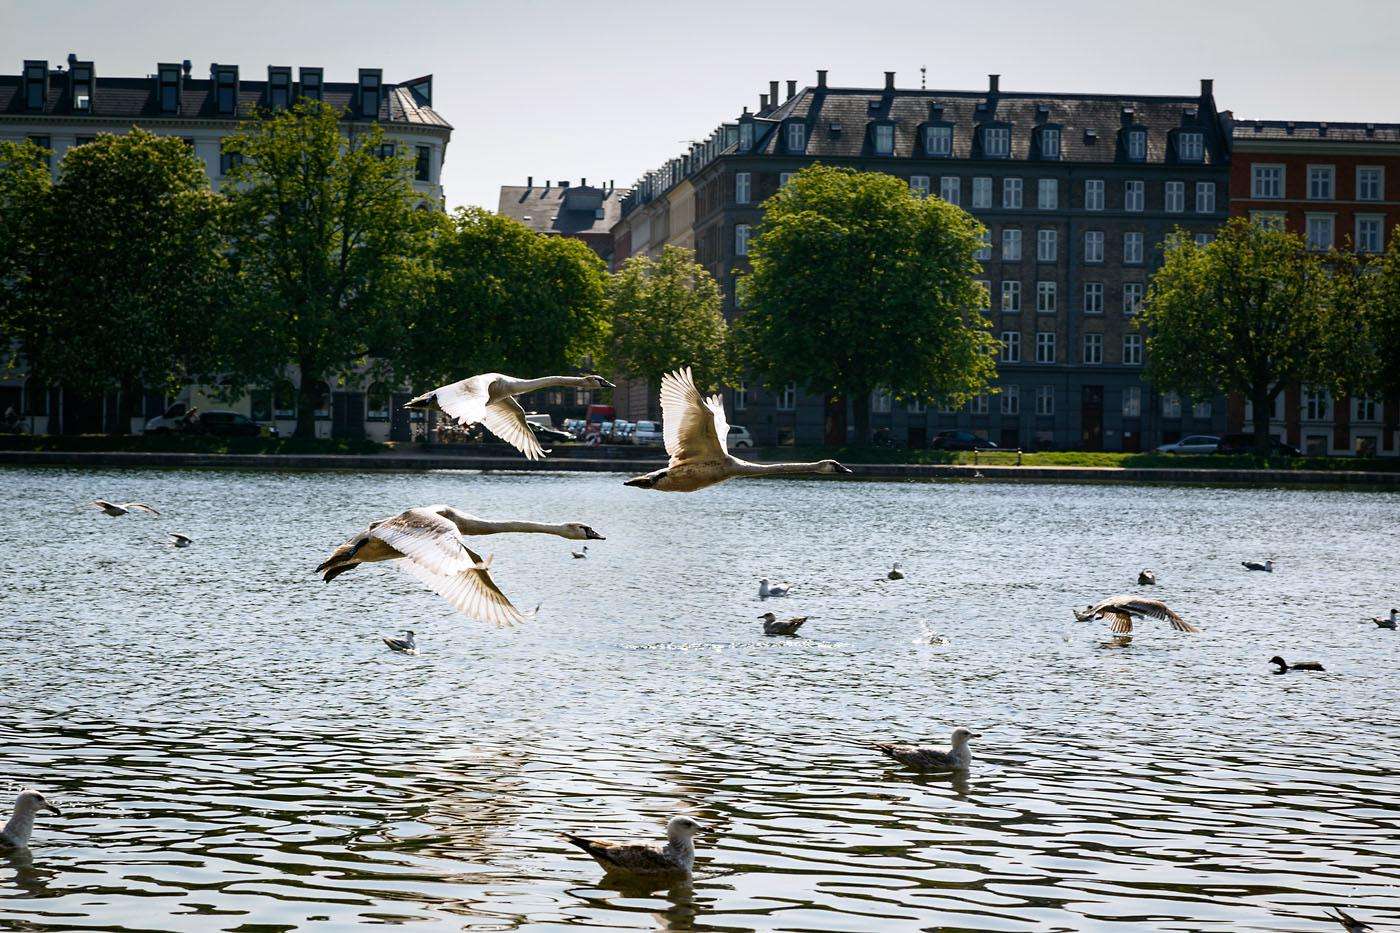 Lakes and birds in Copenhagen